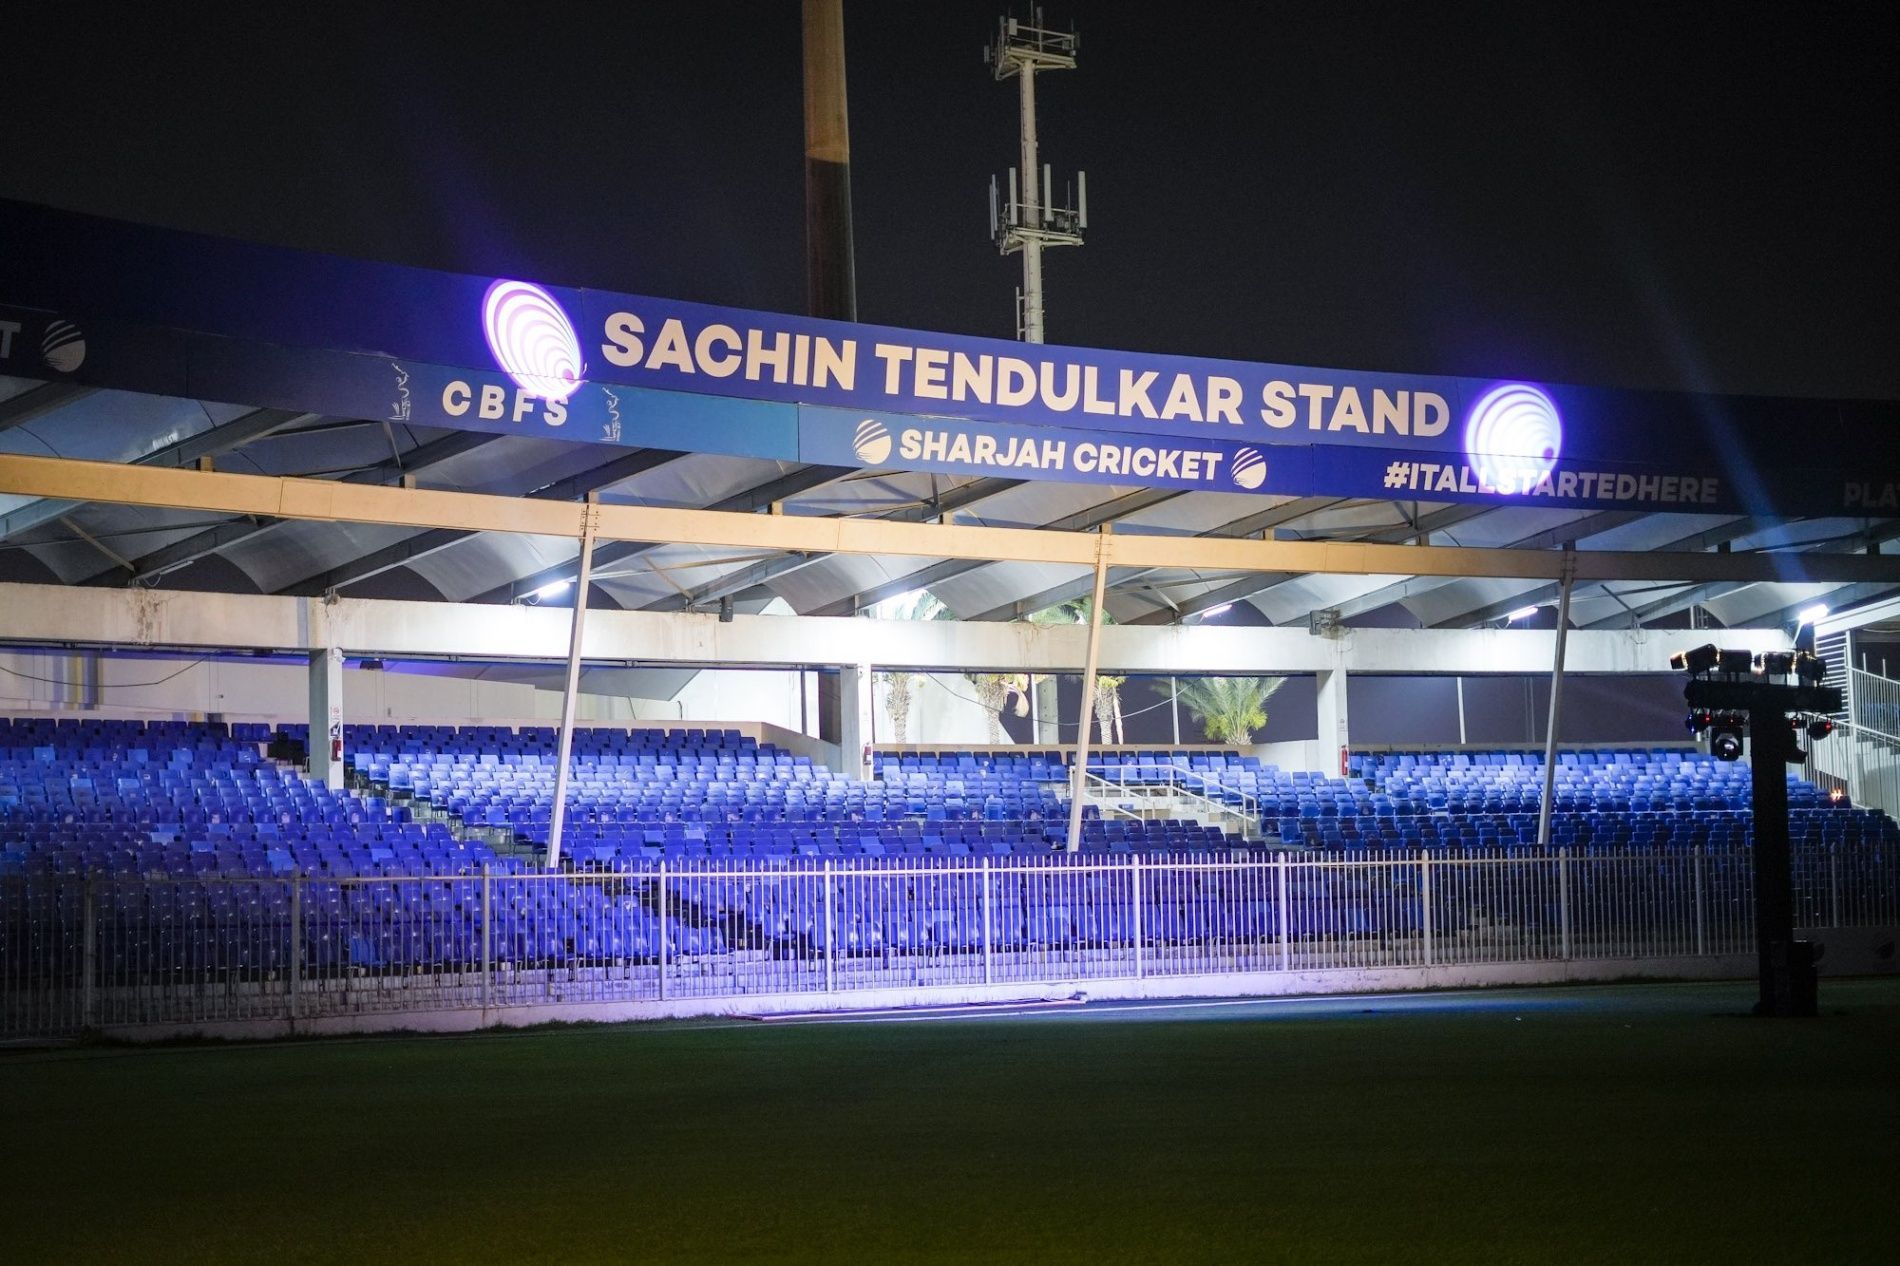 Sachin Tendulkar stand